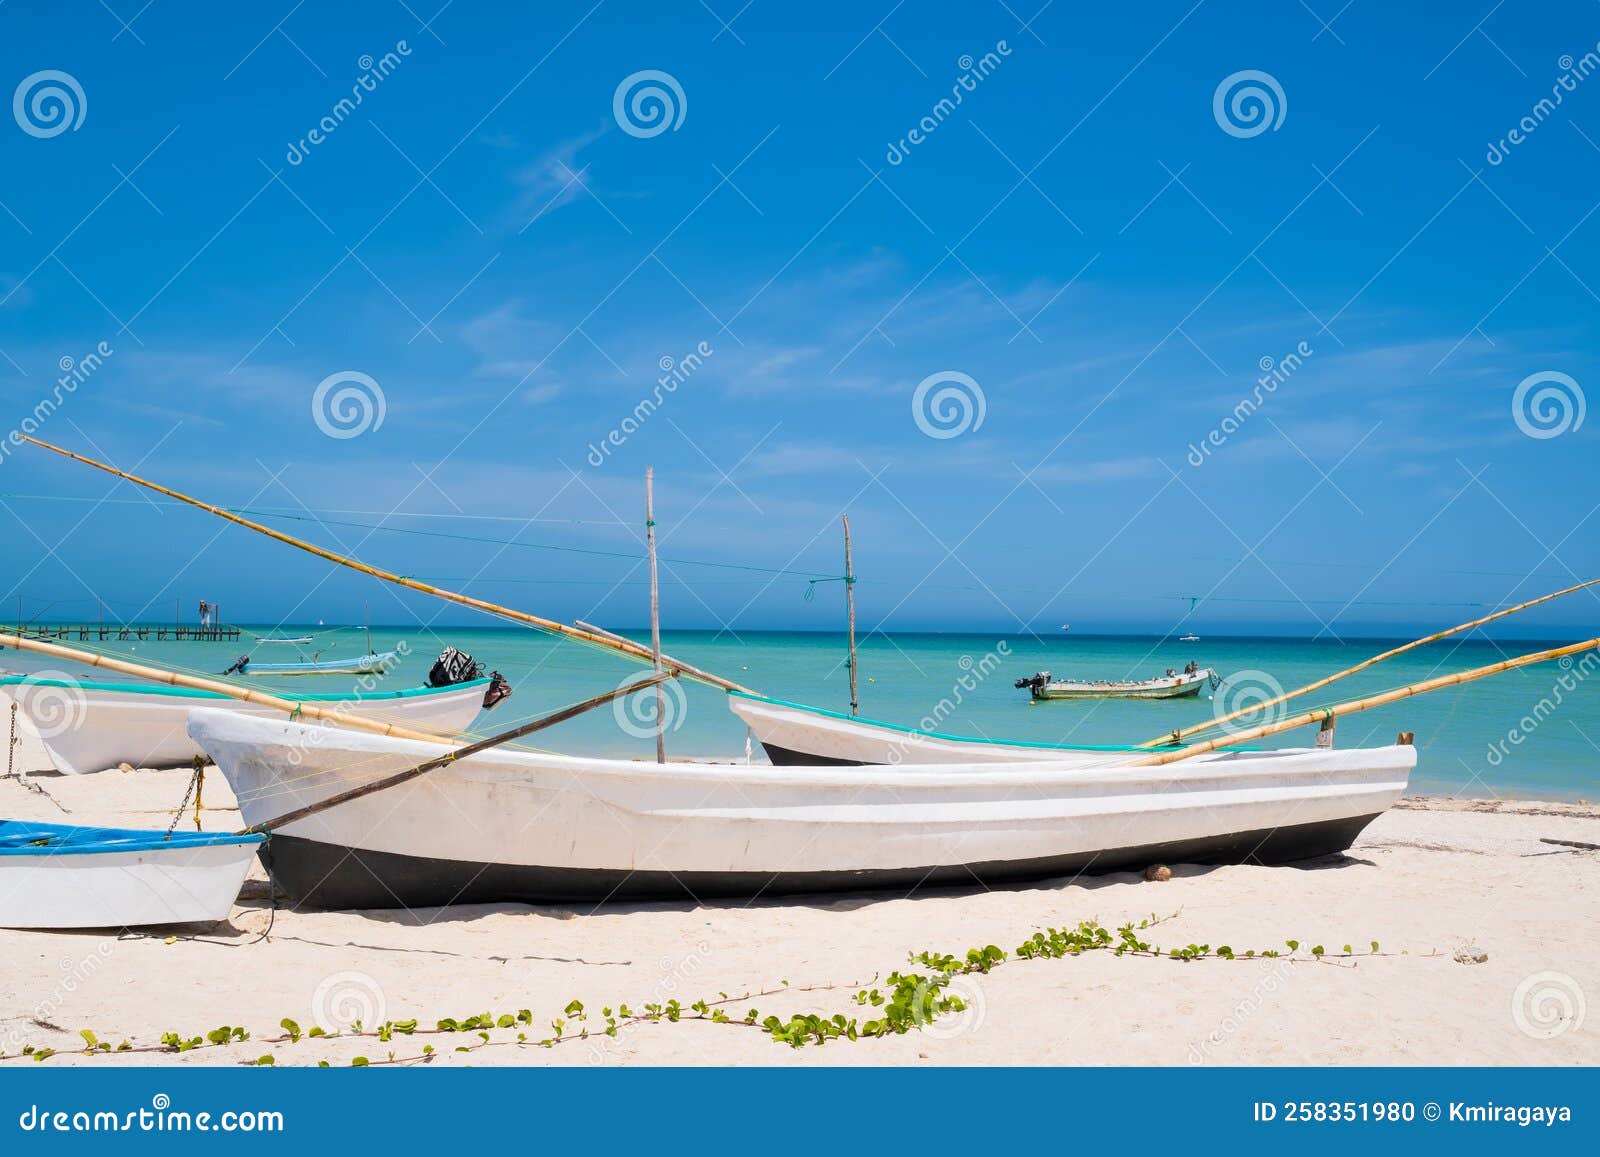 boats at the beach of progreso near merida in mexico